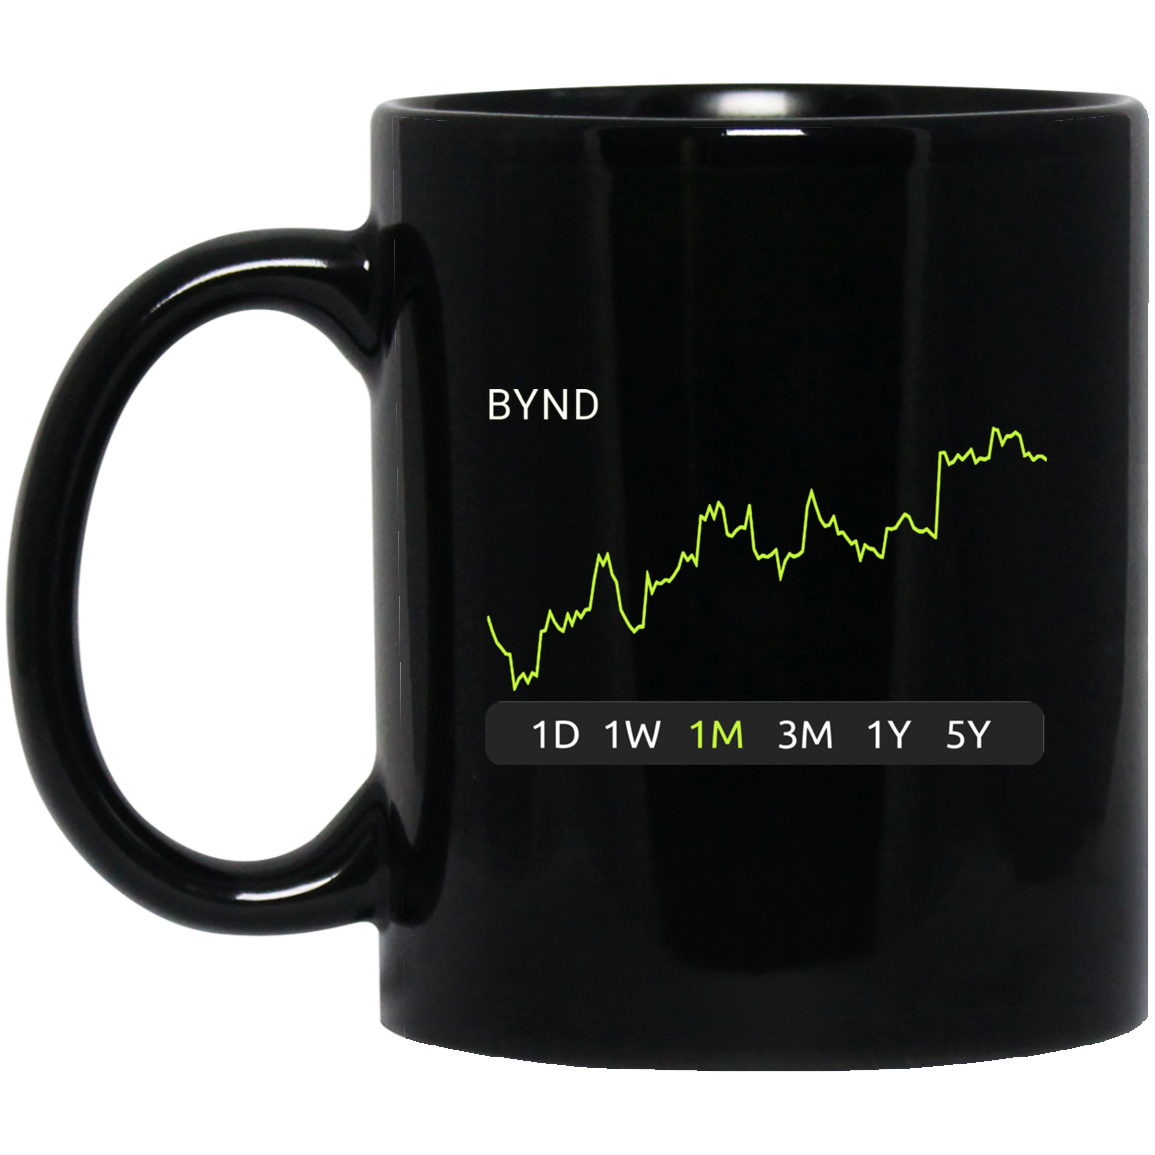 BYND Stock 1m Mug